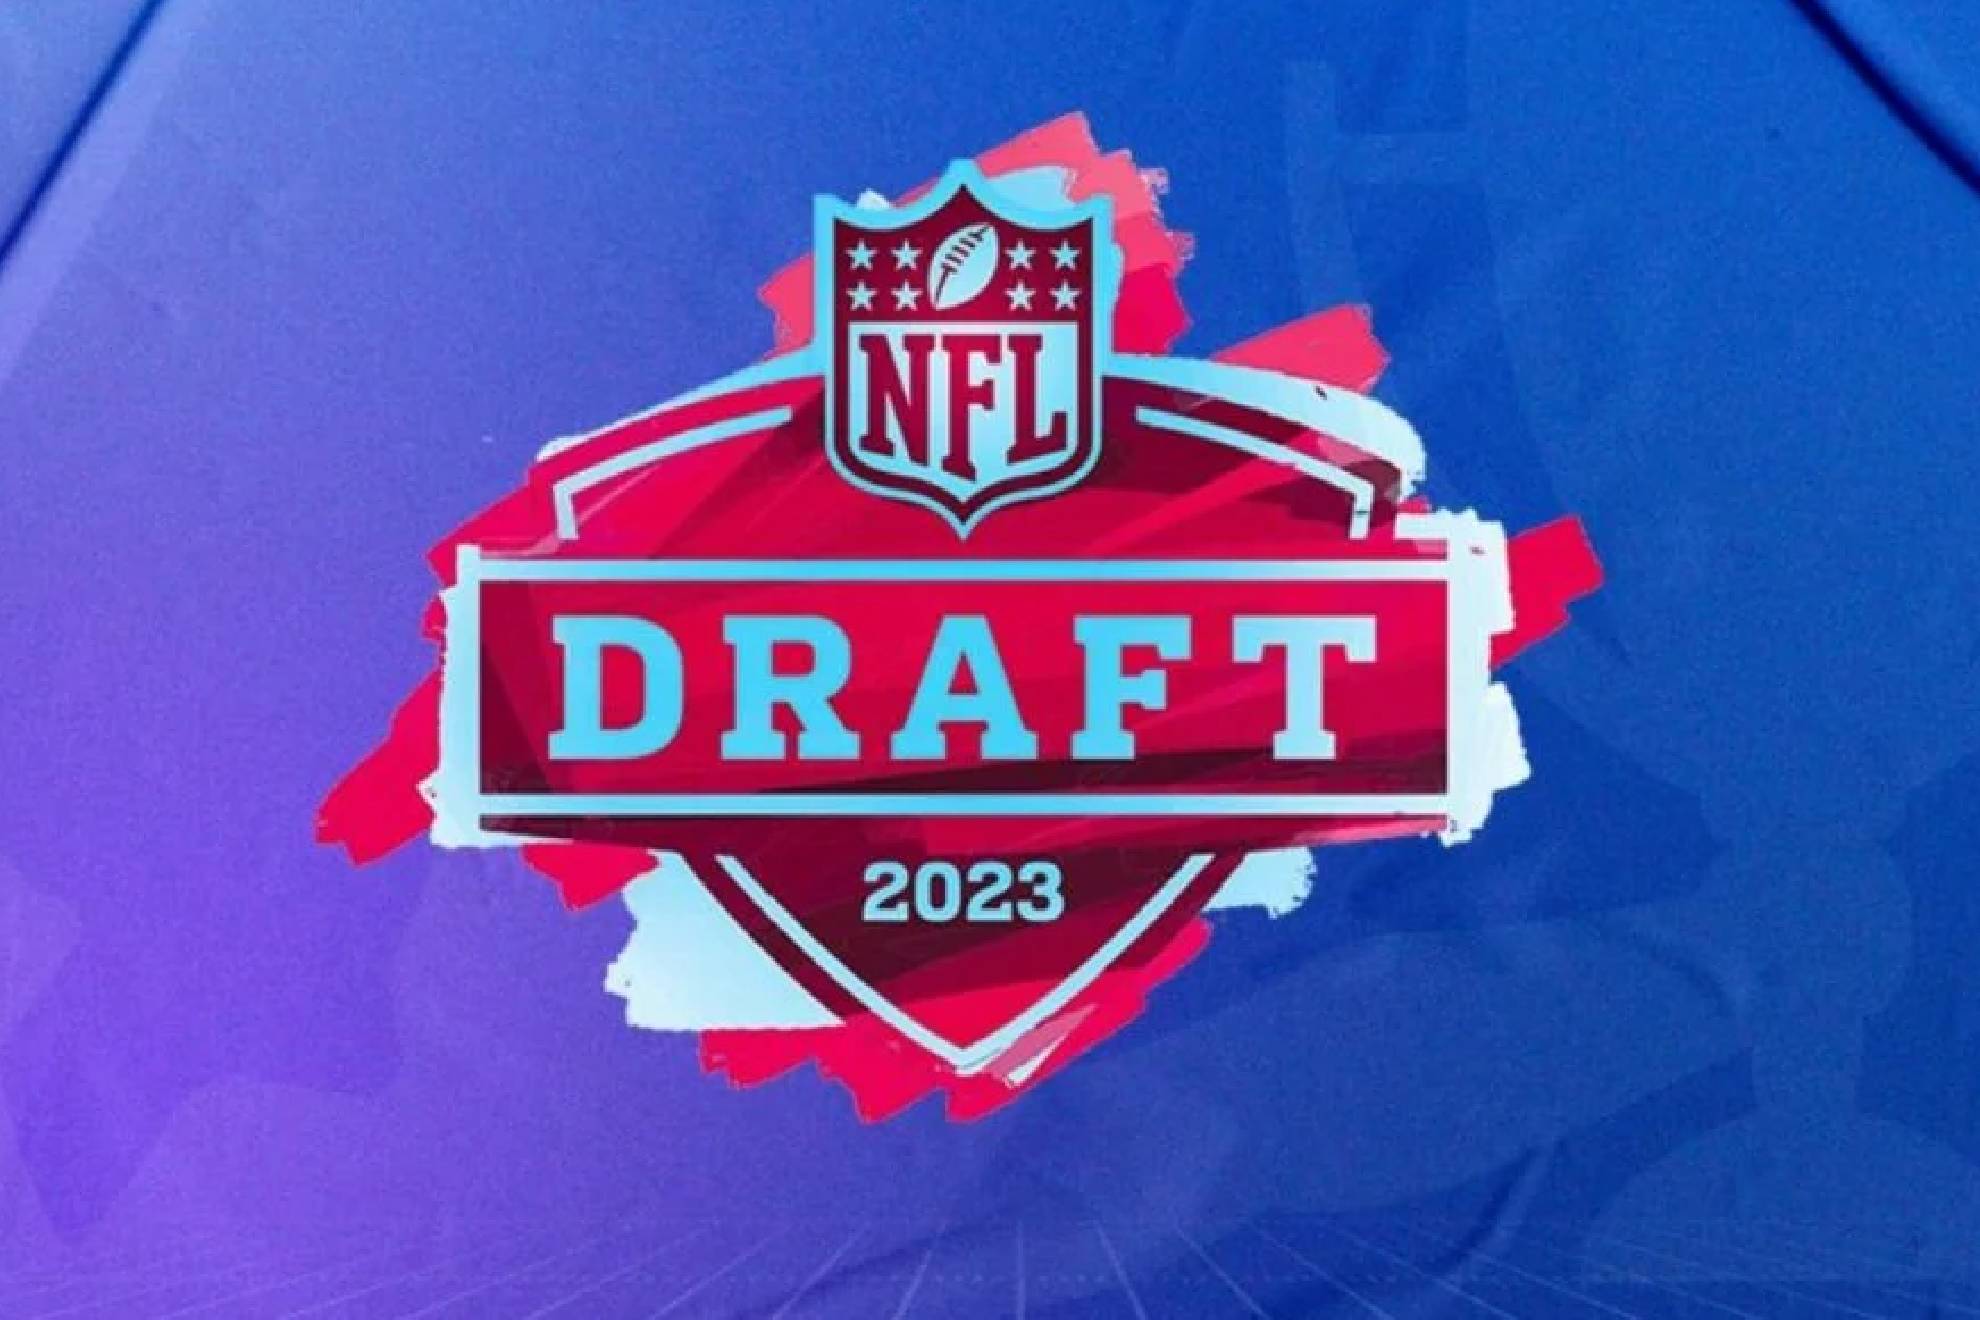 La NFL realiza su esperado Draft rumbo a la temporada 2023.